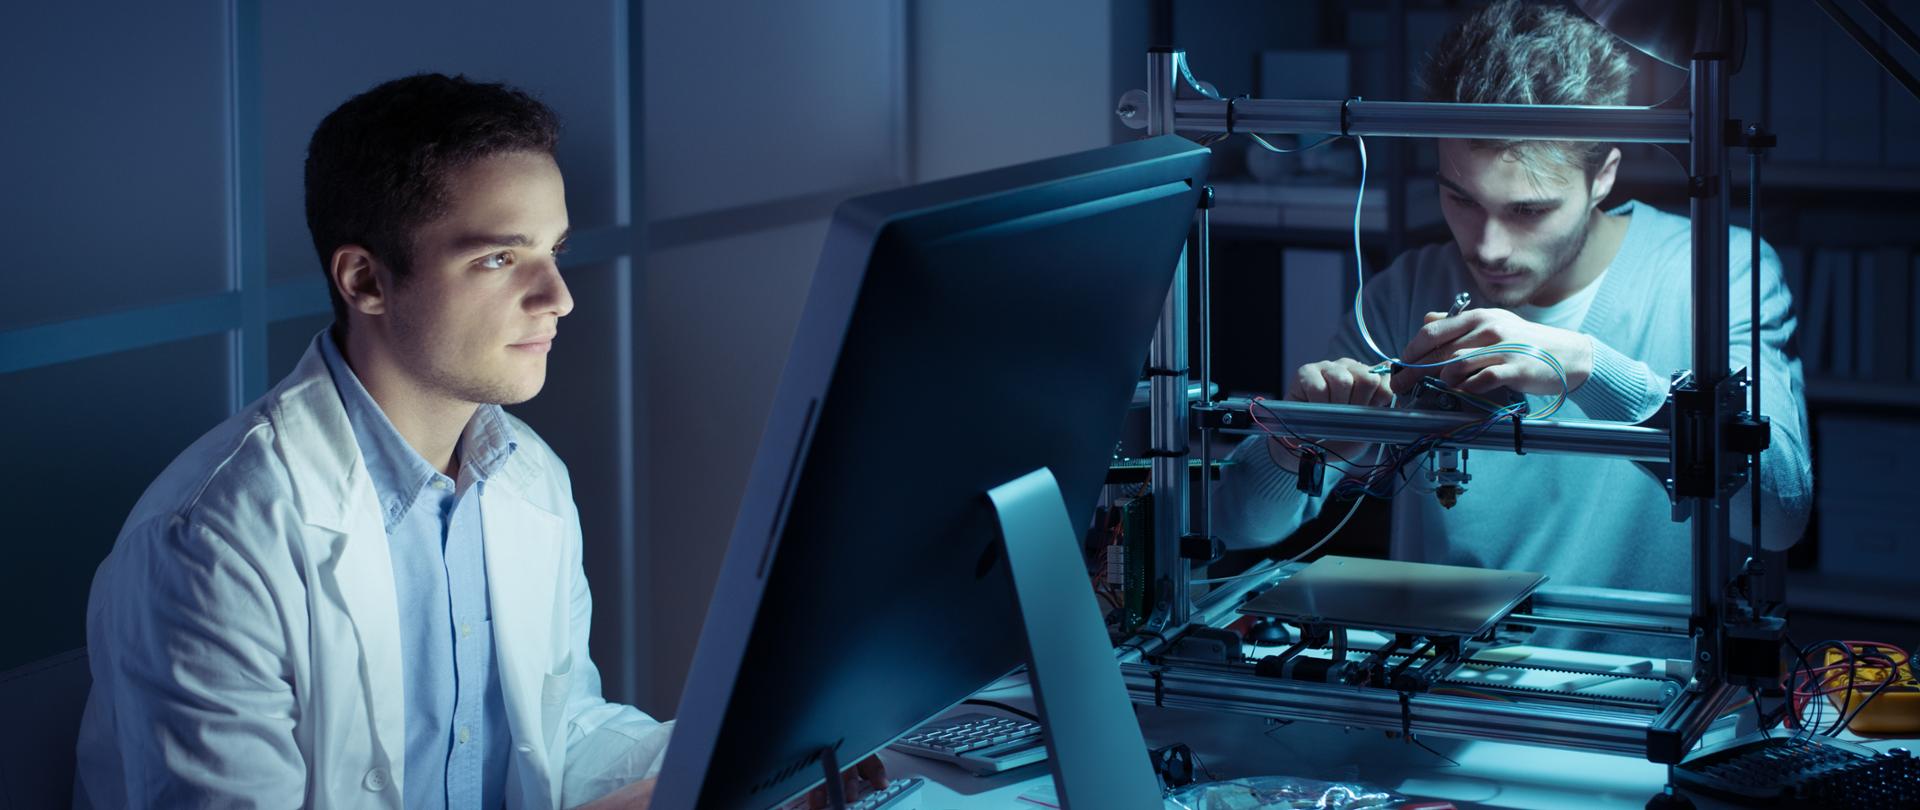 Zdjęcie przedstawia mężczyznę siedzącego przed komputerem i drugiego mężczyznę pracującego w skupieniu nad jakimś technicznym projektem.